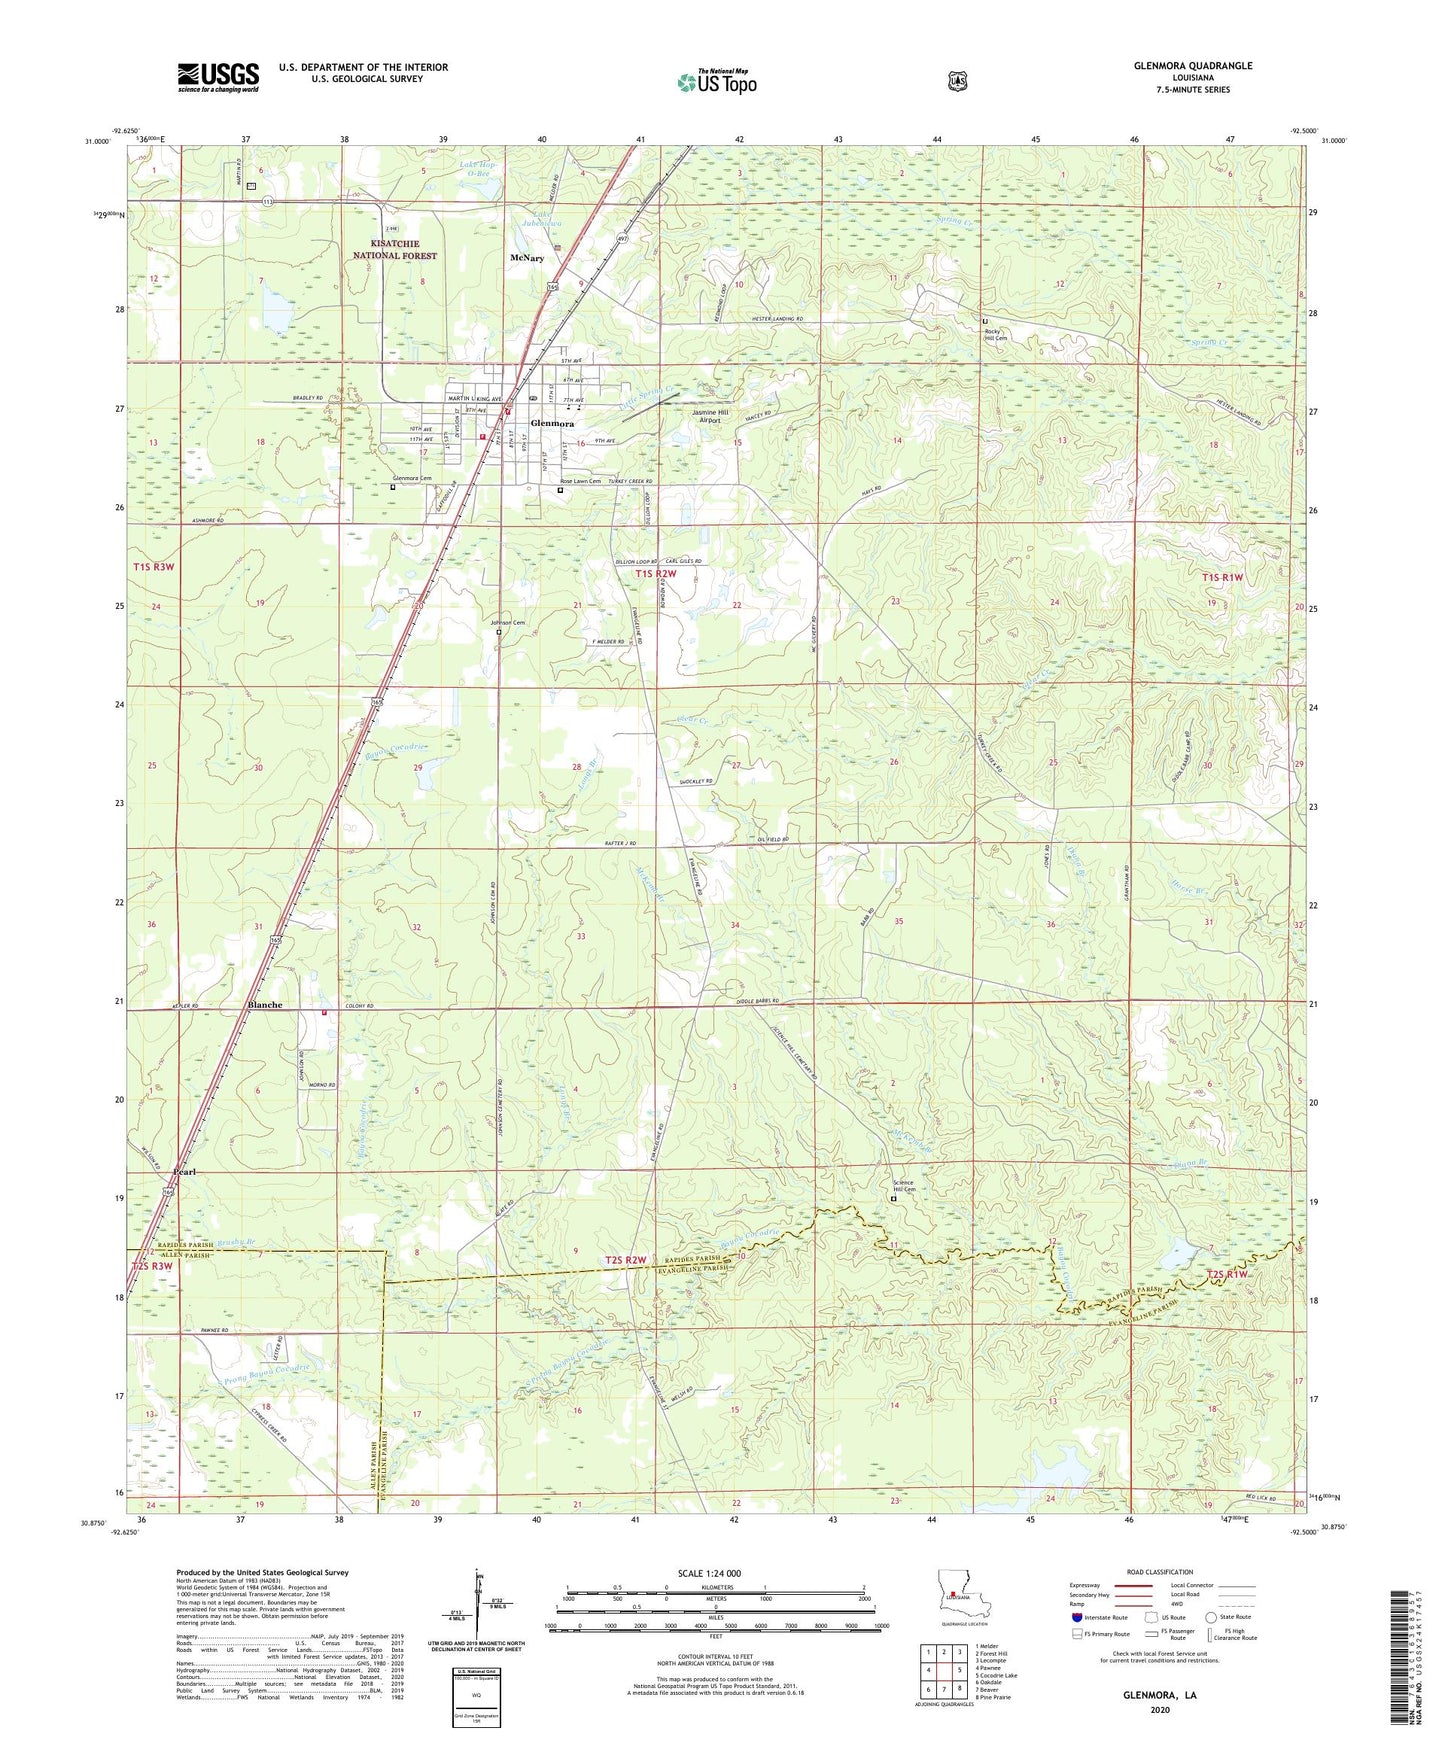 Glenmora Louisiana US Topo Map Image